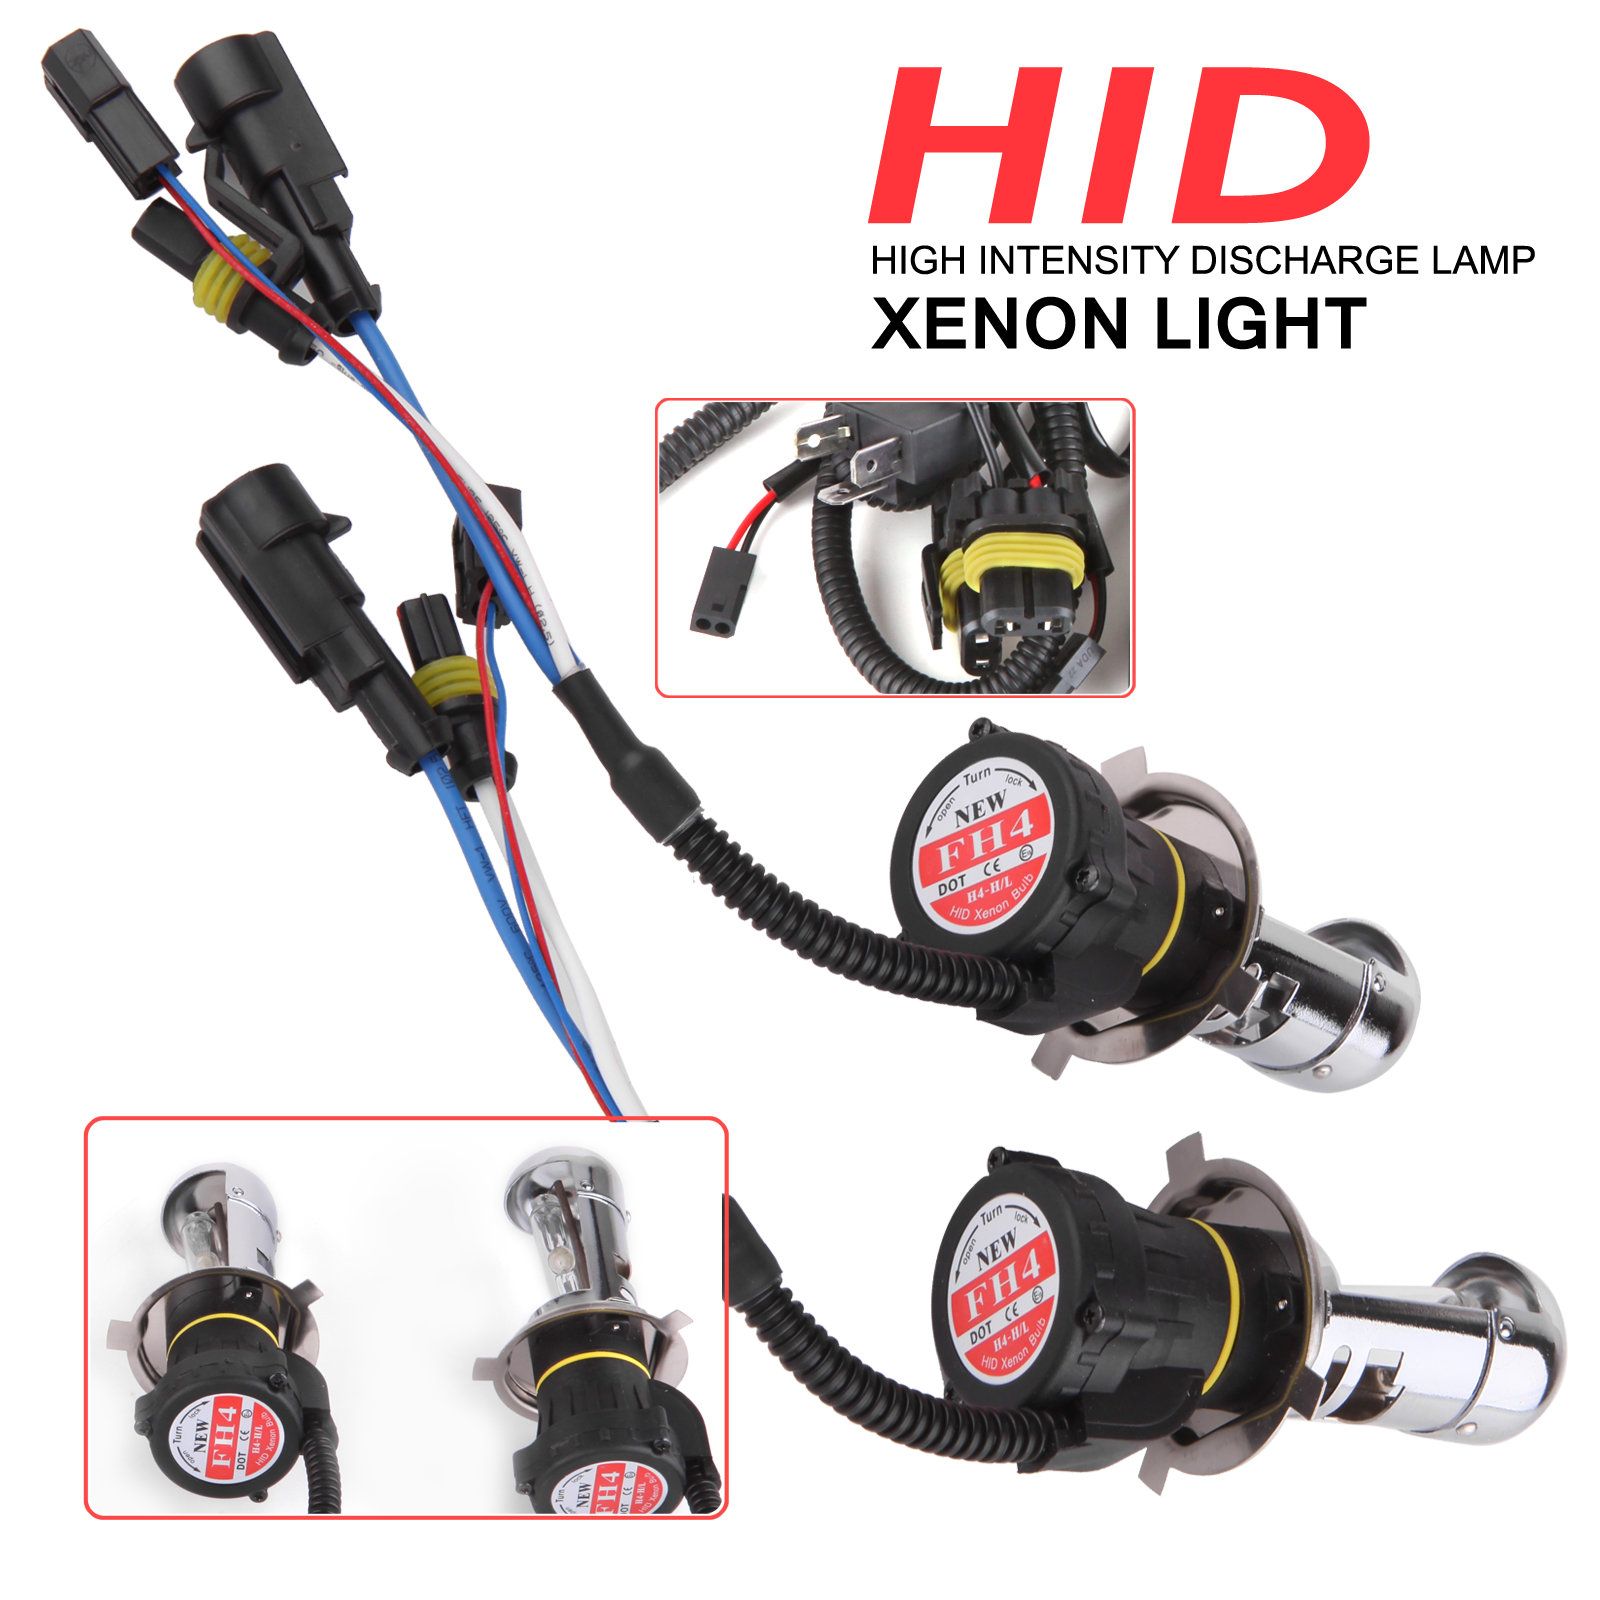 Xenon Lights Hotsell, SAVE 51%.